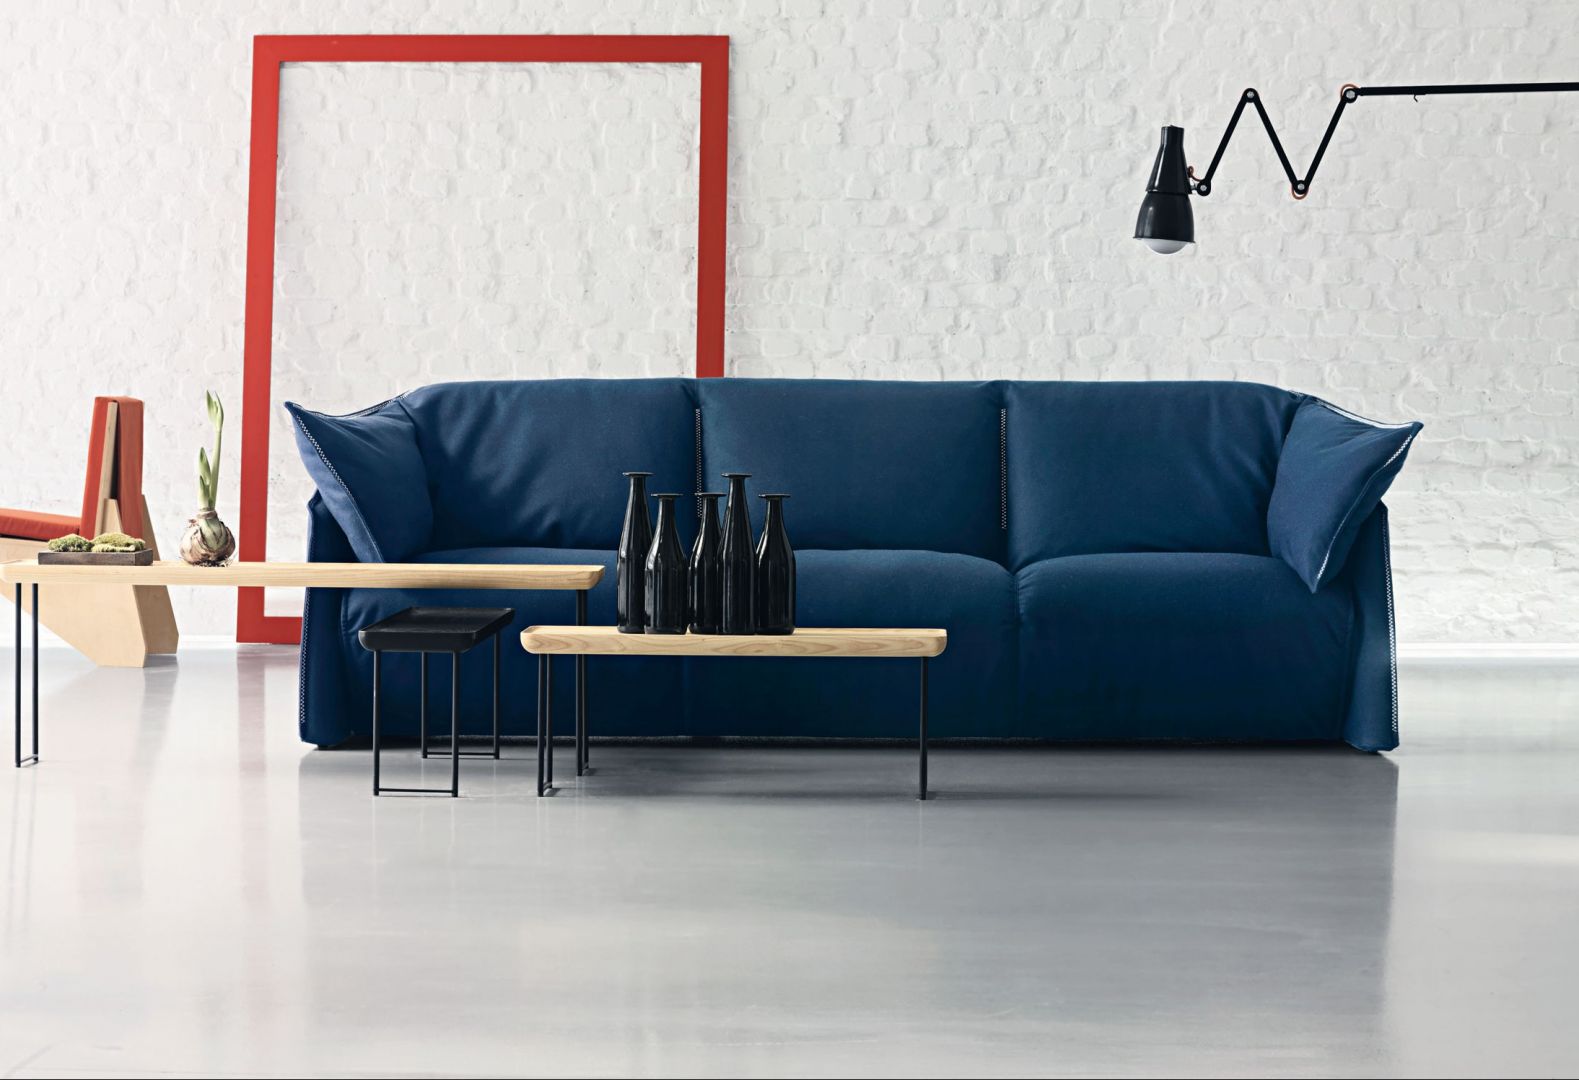 Sofa „La Mise” i stoliki kawowe „Torei”, wykonane z drewna i metalu. Forma stolików nawiązuje do tacy (nazwa ta „Torei” oznacza w języku japońskim tacę). Fot. Cassina